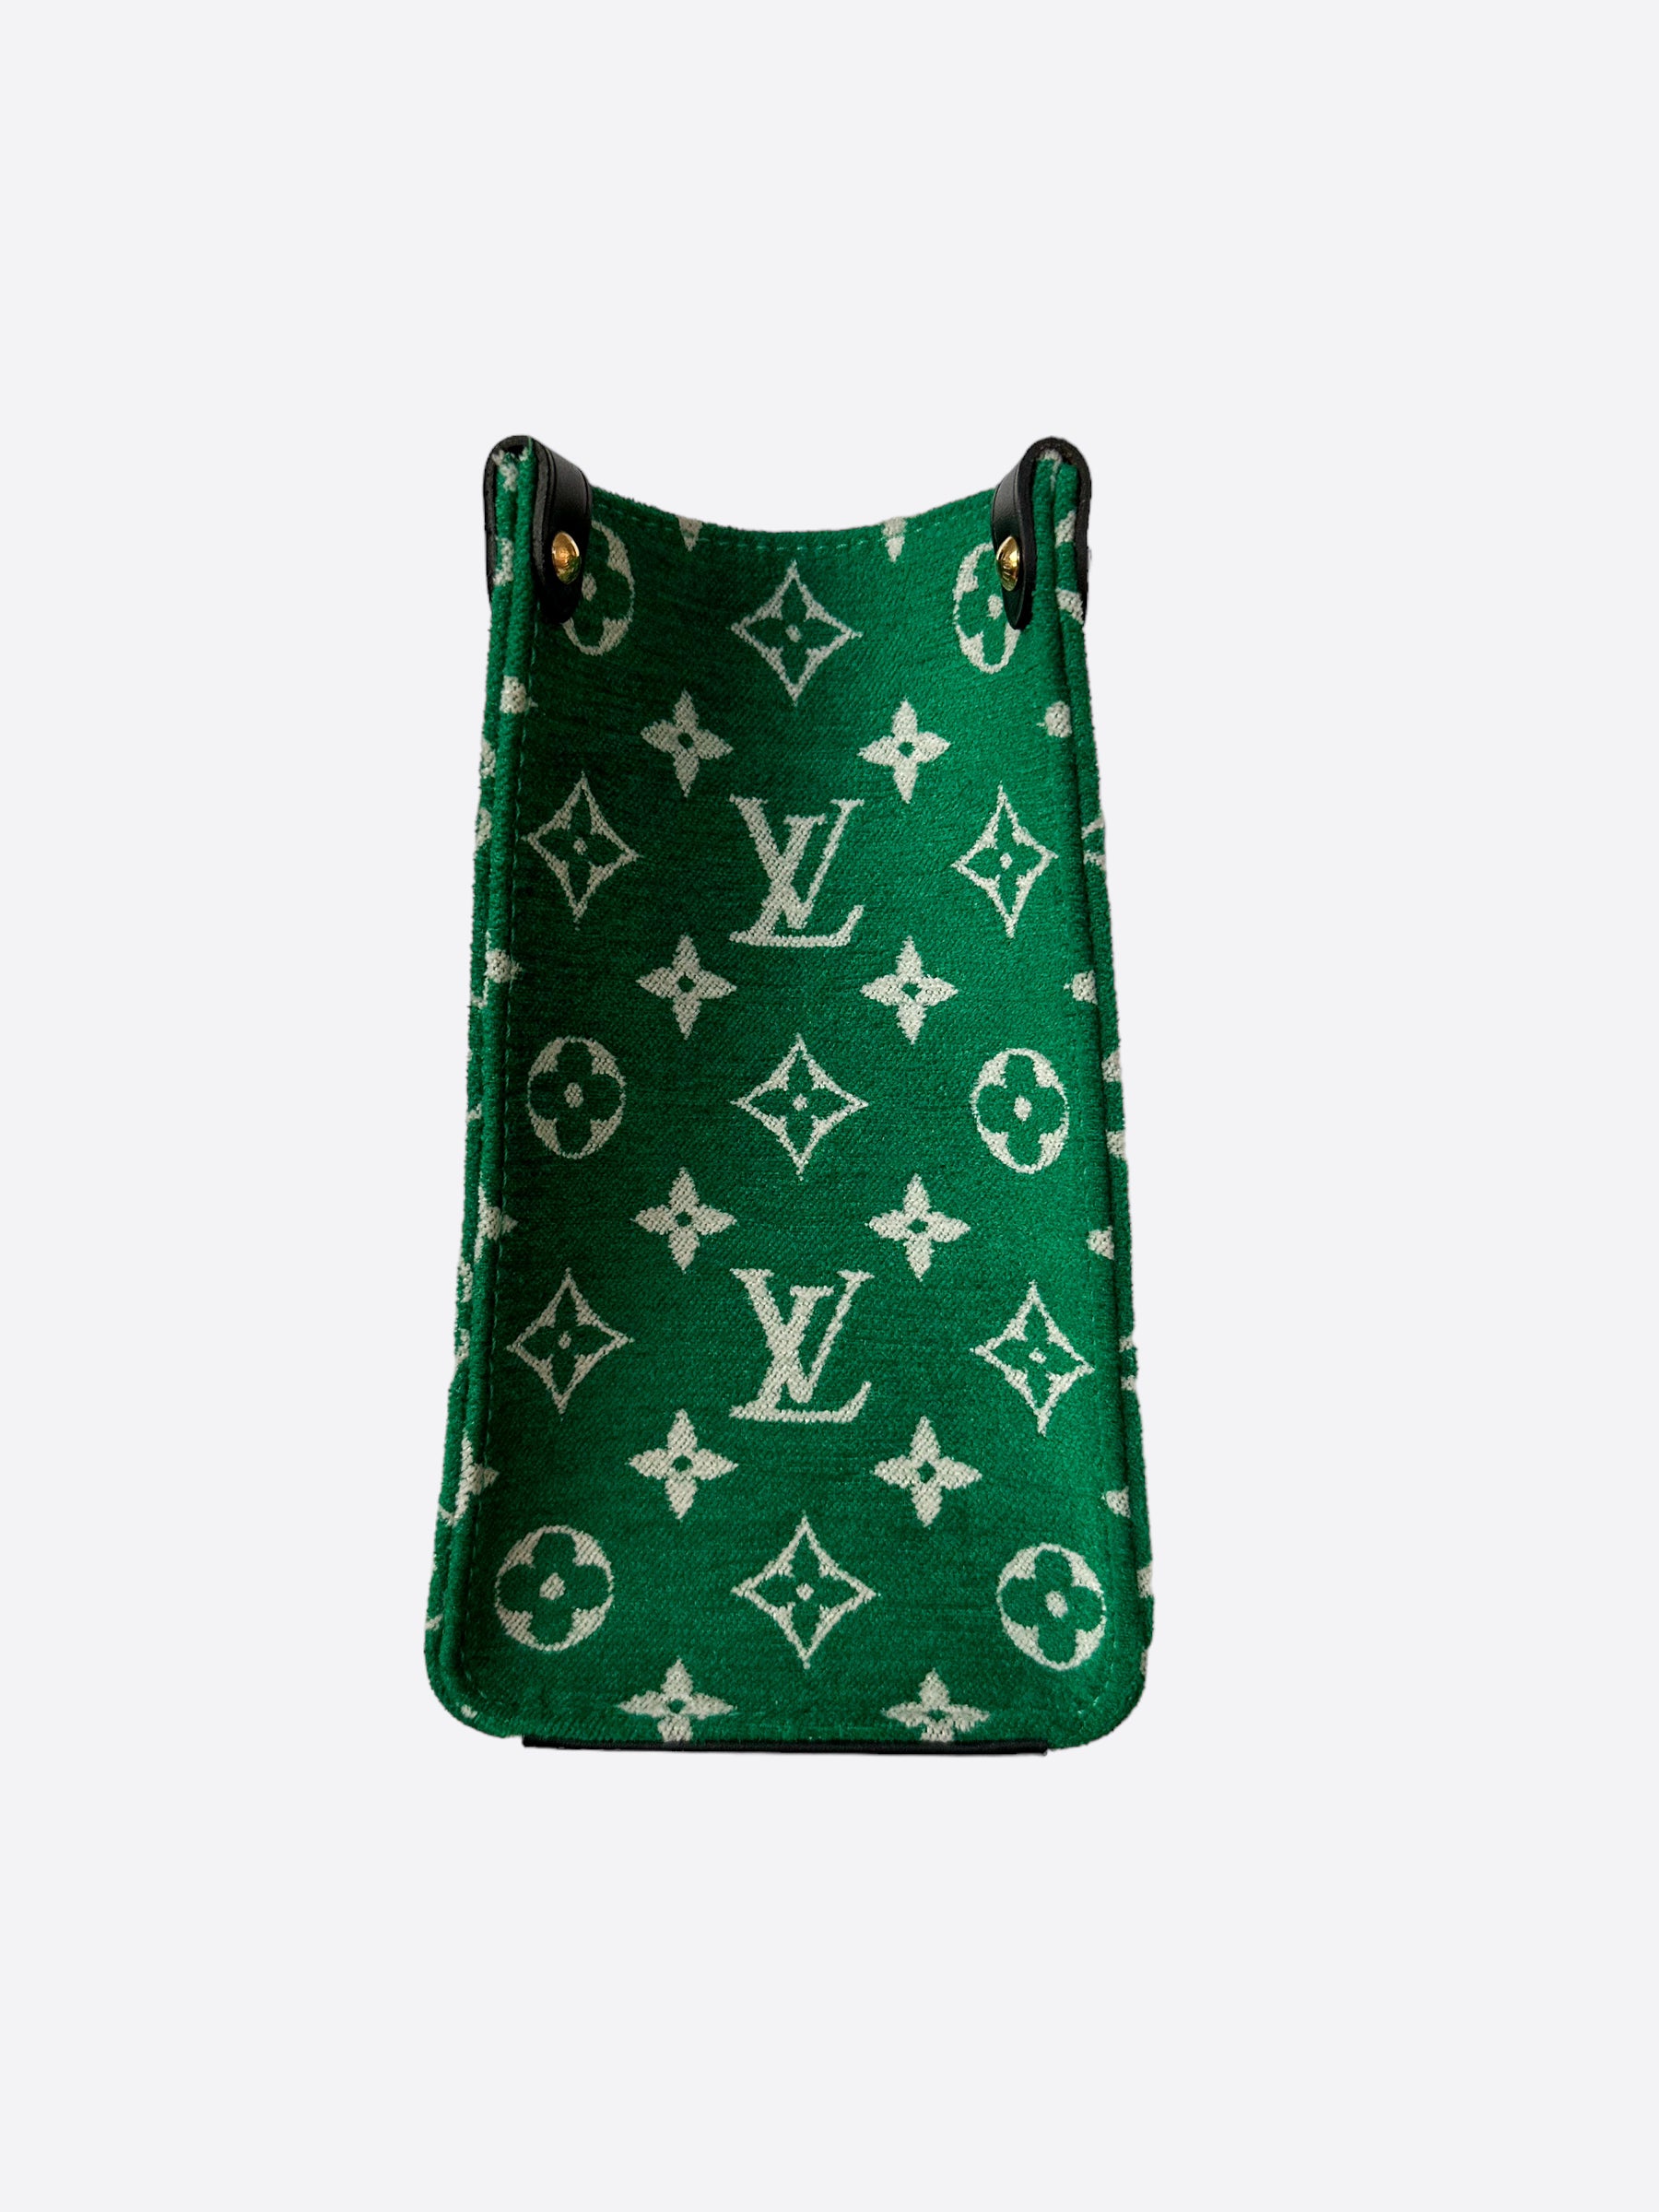 Louis Vuitton Green & White Monogram On The Go PM